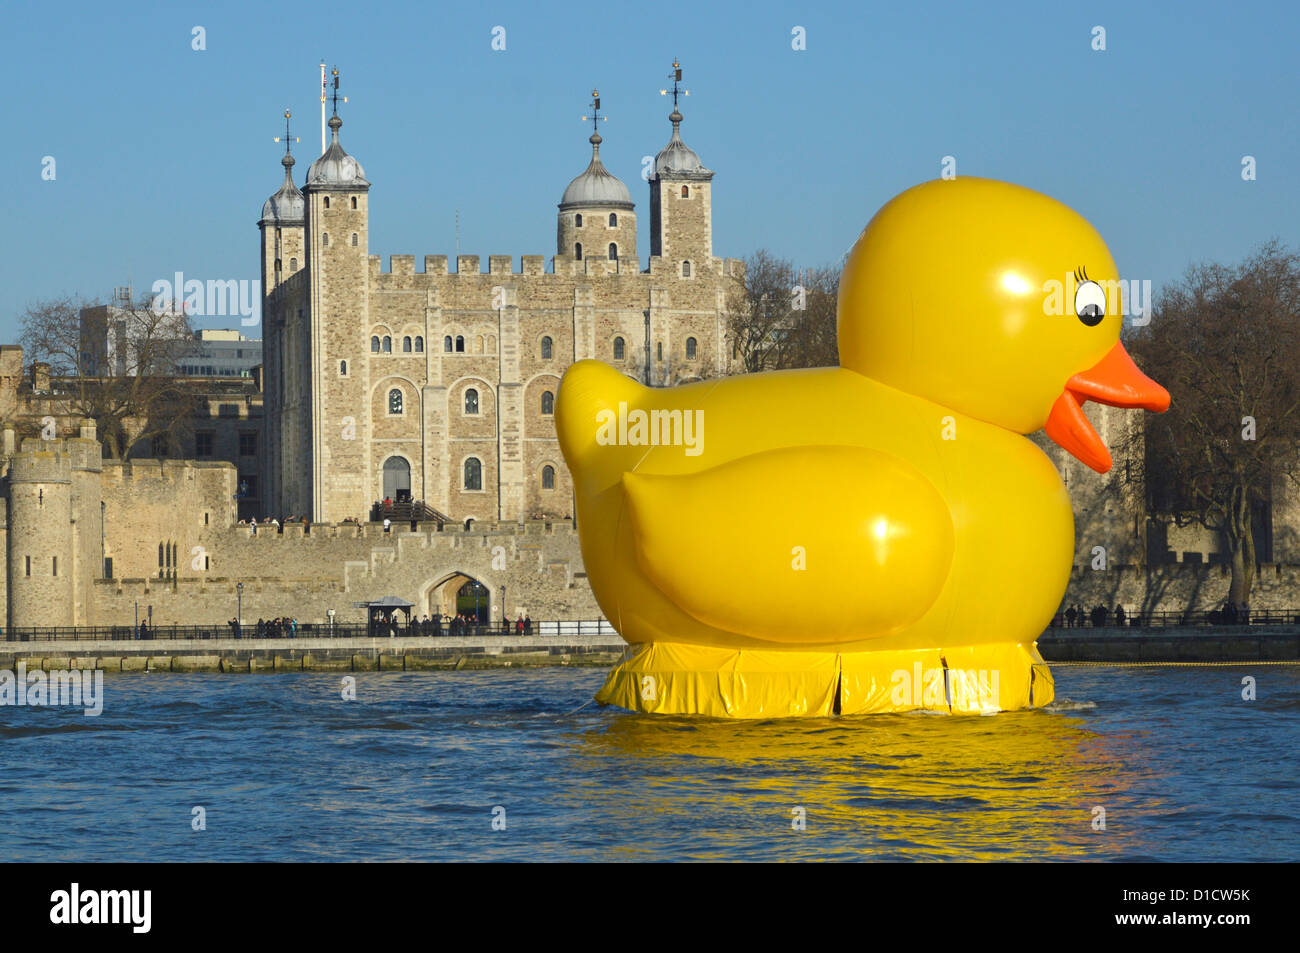 Stunt sur la Tamise avec grand canard jaune remorqué au-delà de la Tour de Londres la promotion du site web de bingo Jackpotjoy Banque D'Images